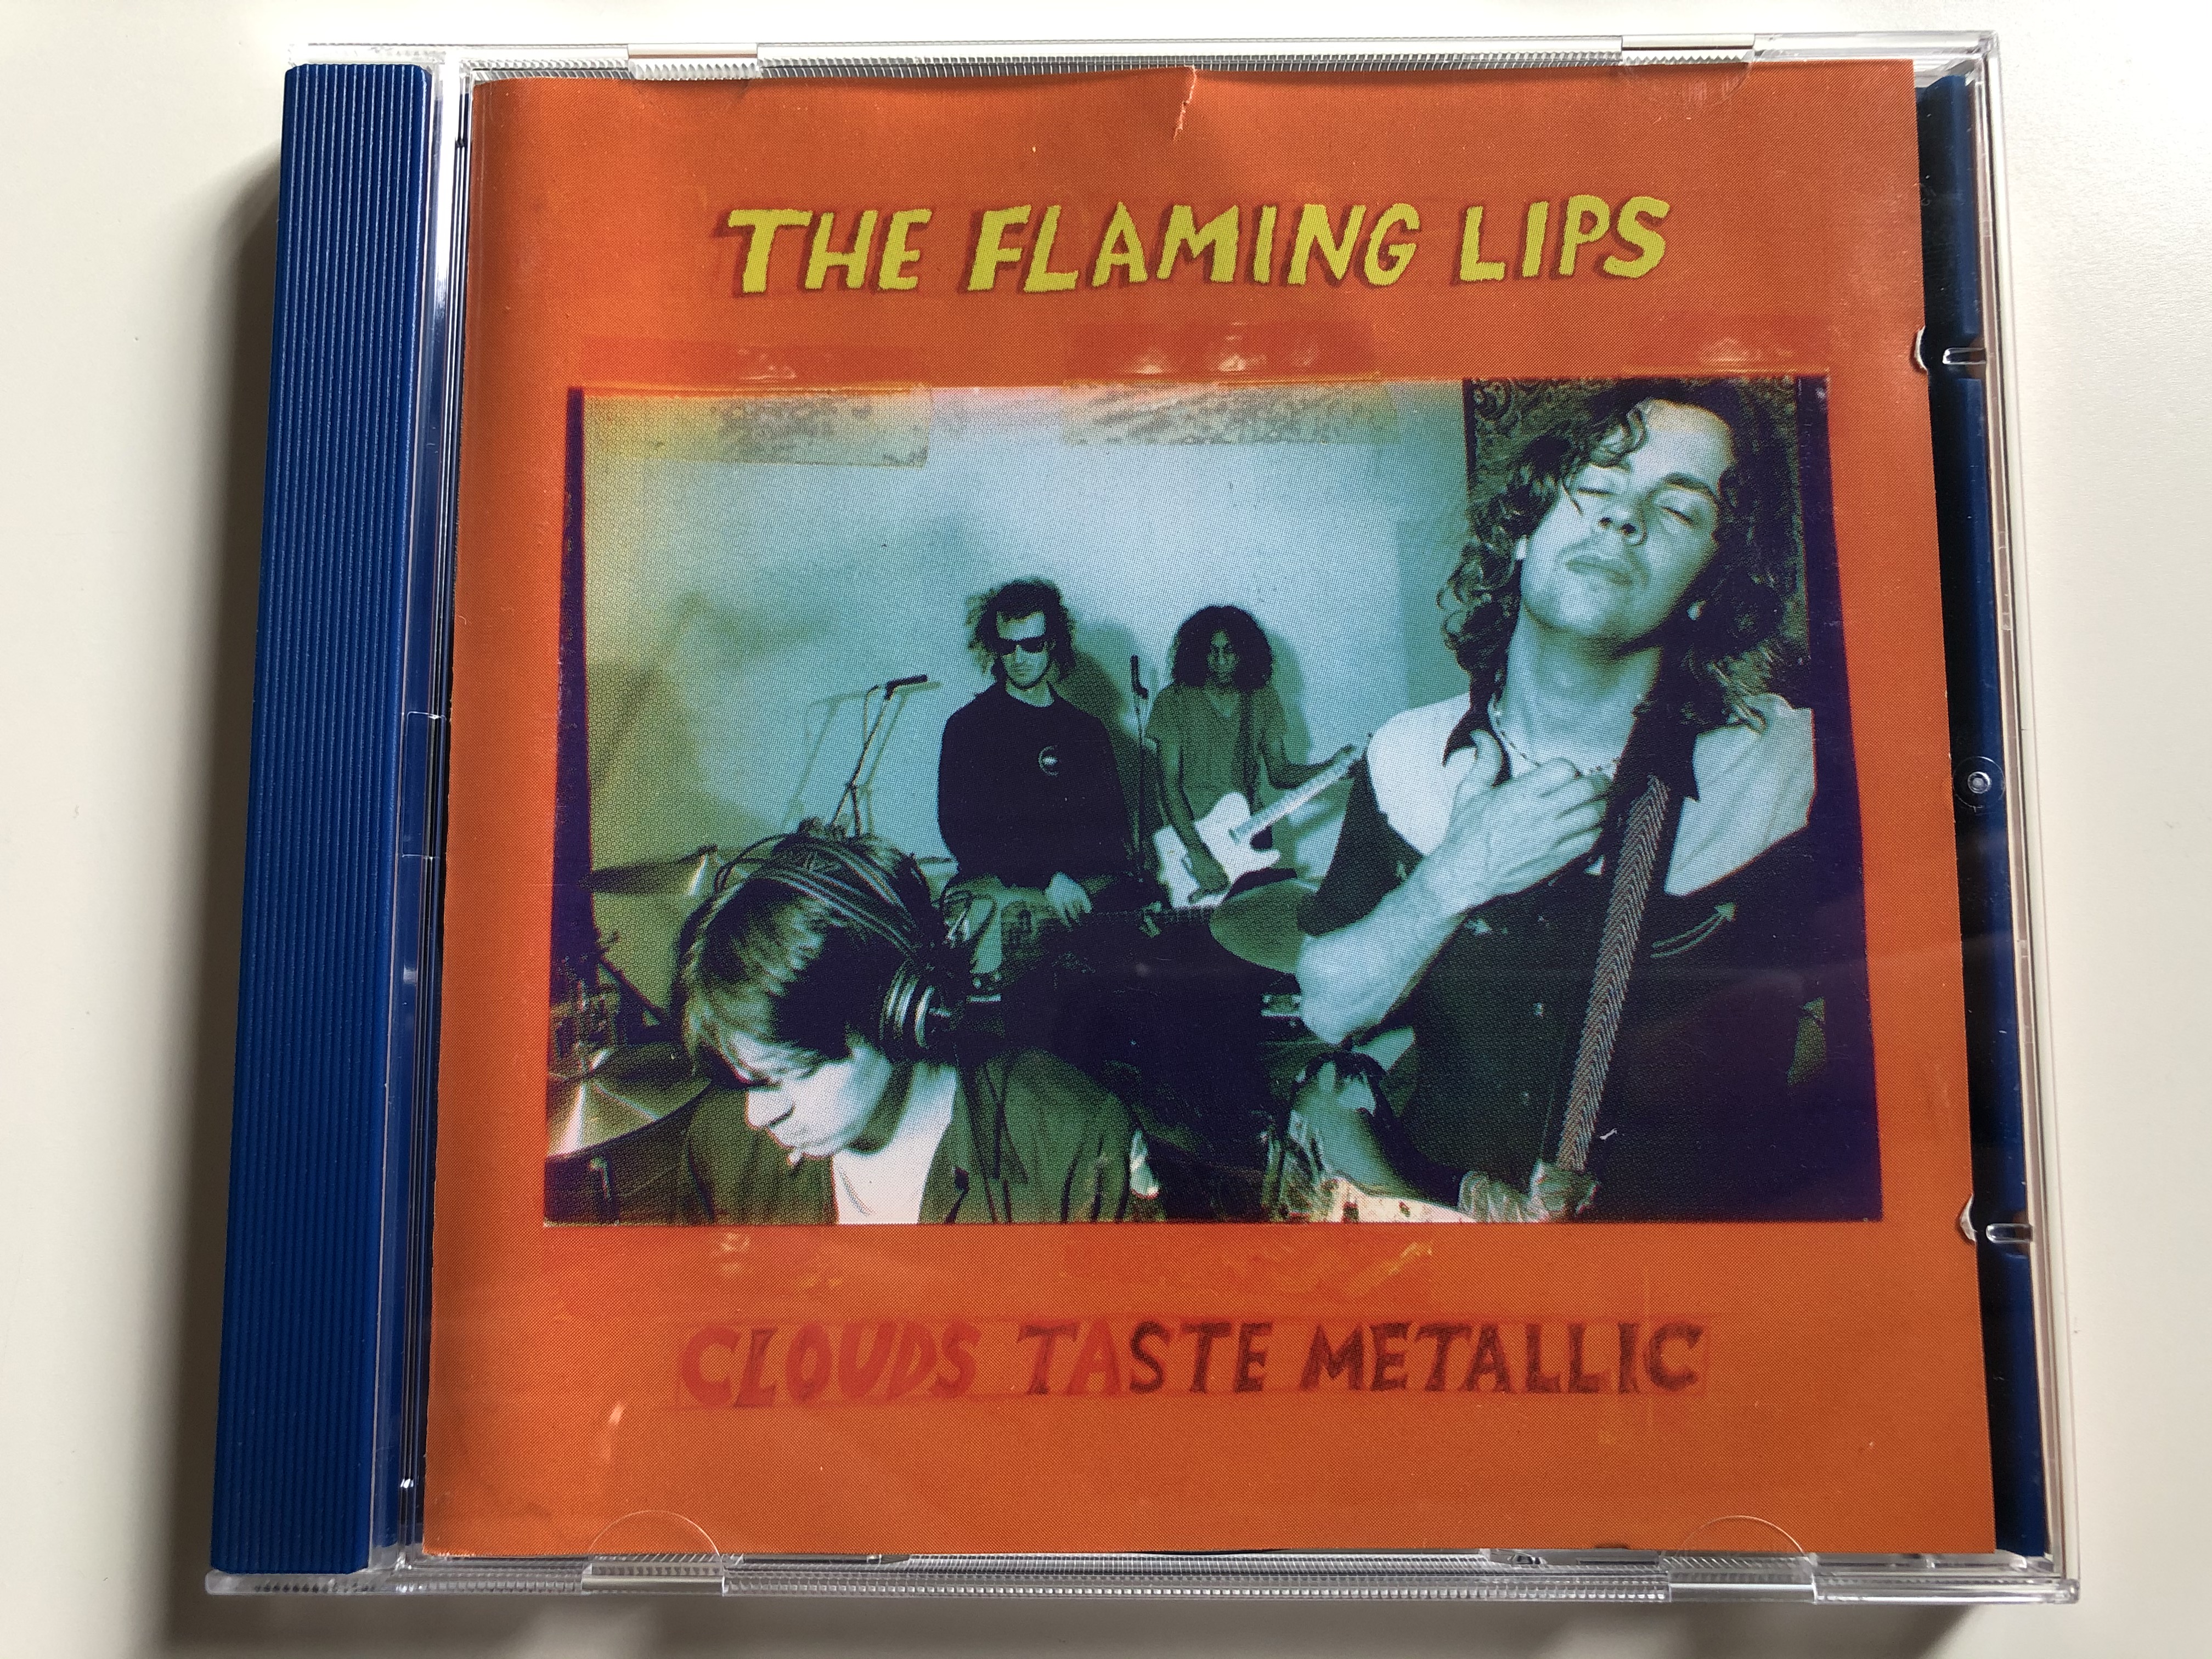 the-flaming-lips-clouds-taste-metallic-warner-bros.-records-audio-cd-1995-9362-45911-2-1-.jpg